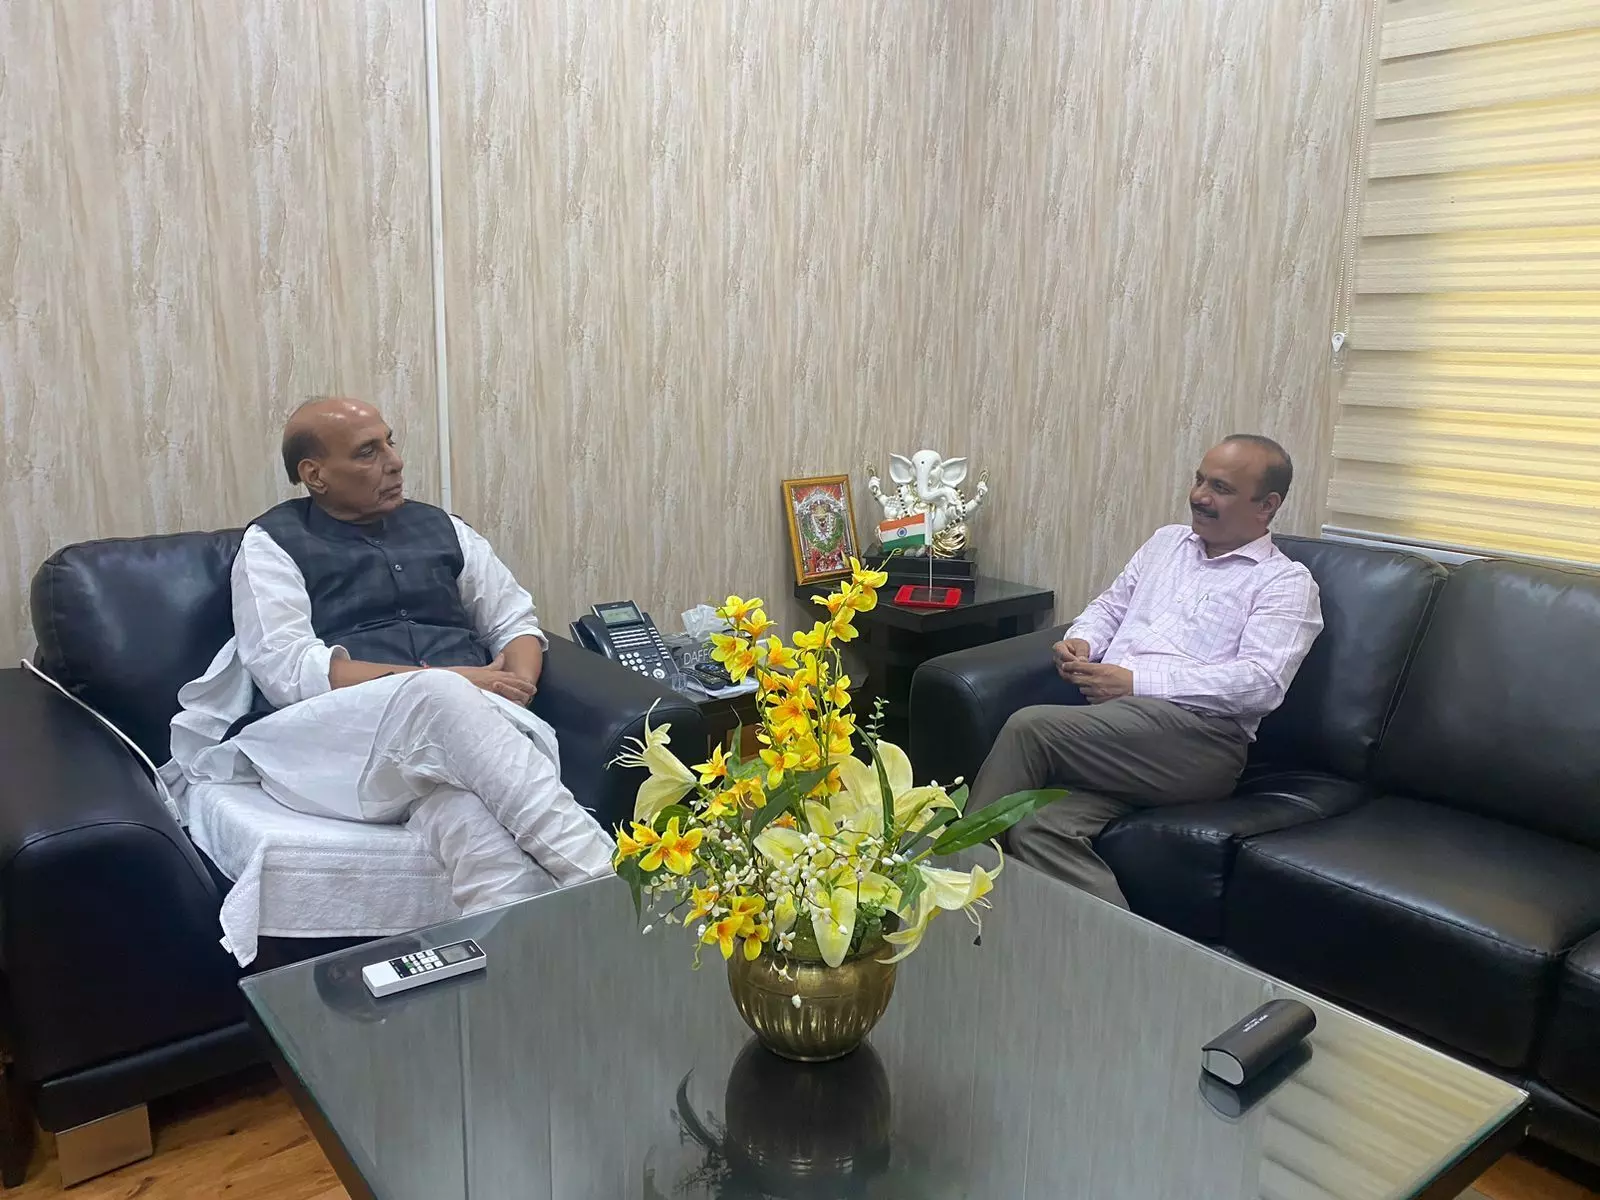 रक्षा मंत्री राजनाथ सिंह से मिले डॉ एम जे खान, राजनीति से लेकर किसानों और सामुदायिक मामलों समेत कई मुद्दों पर लंबी बातचीत हुई